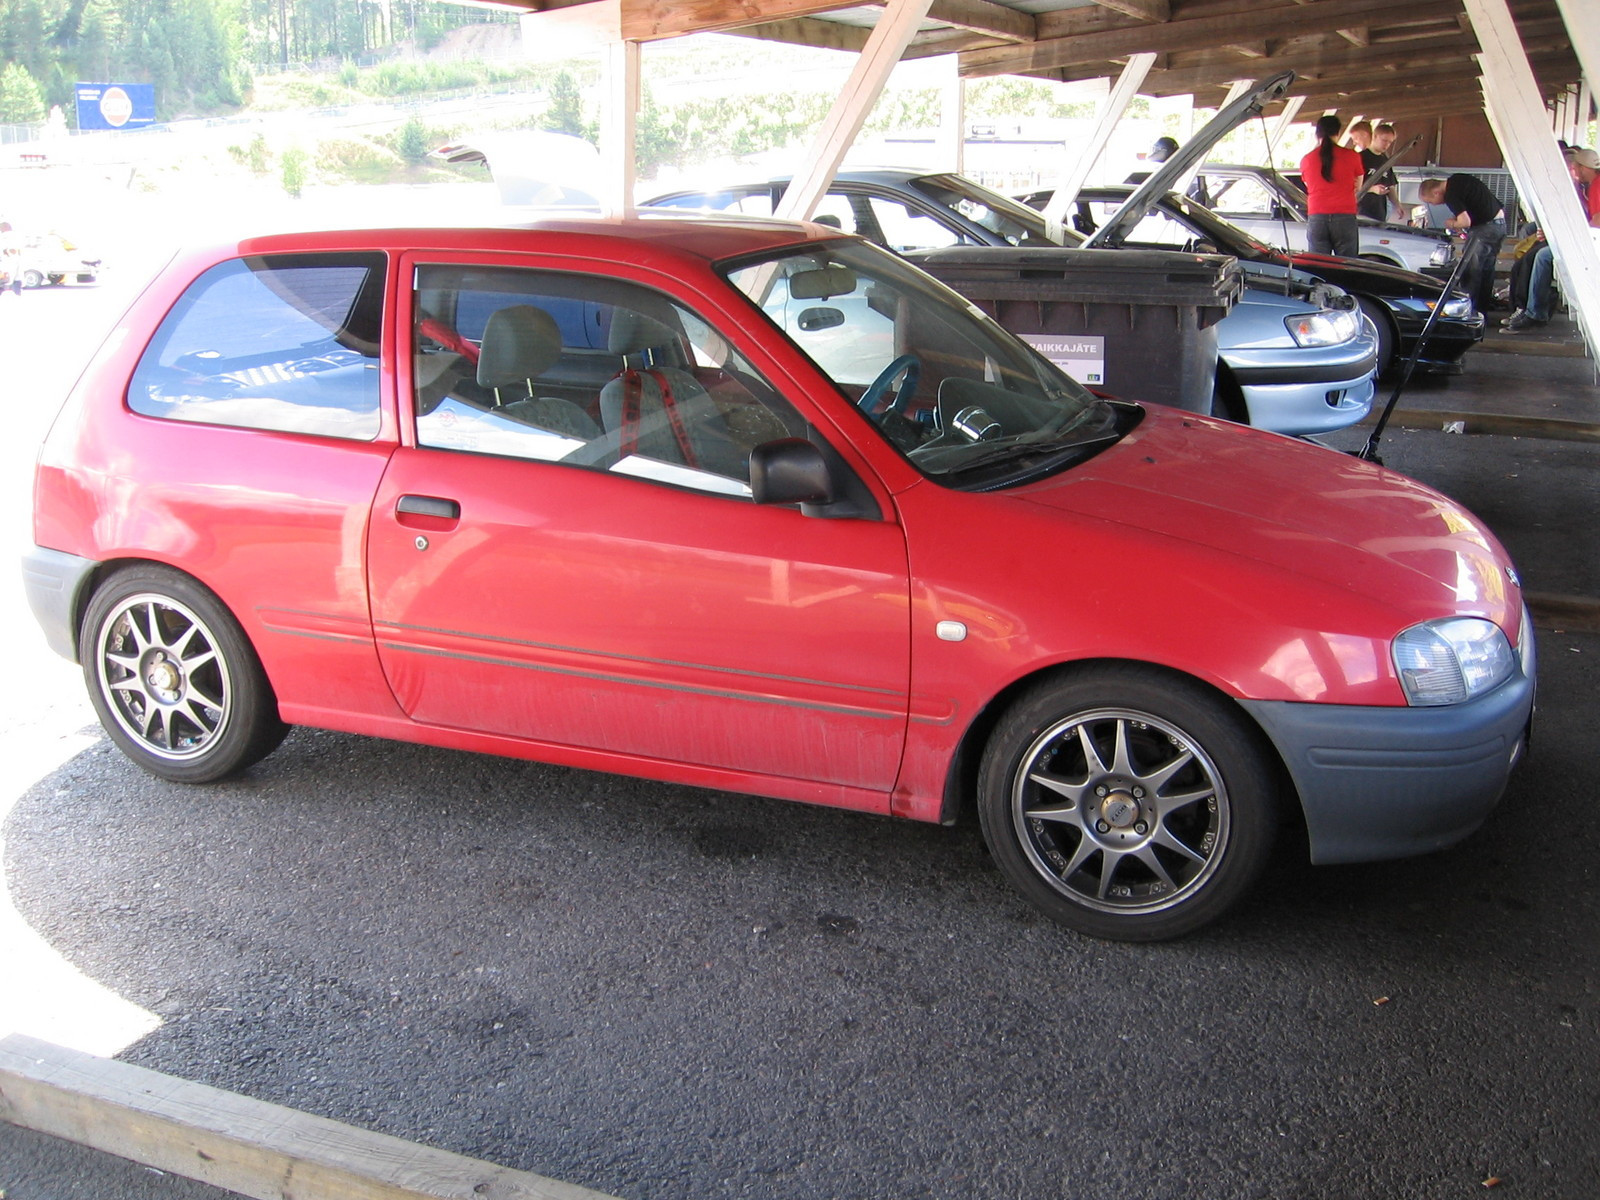 Fintoys ratapÃ¤ivÃ¤ Ahvenisto 2.8.2008, Punainen P9 Toyota Starlet